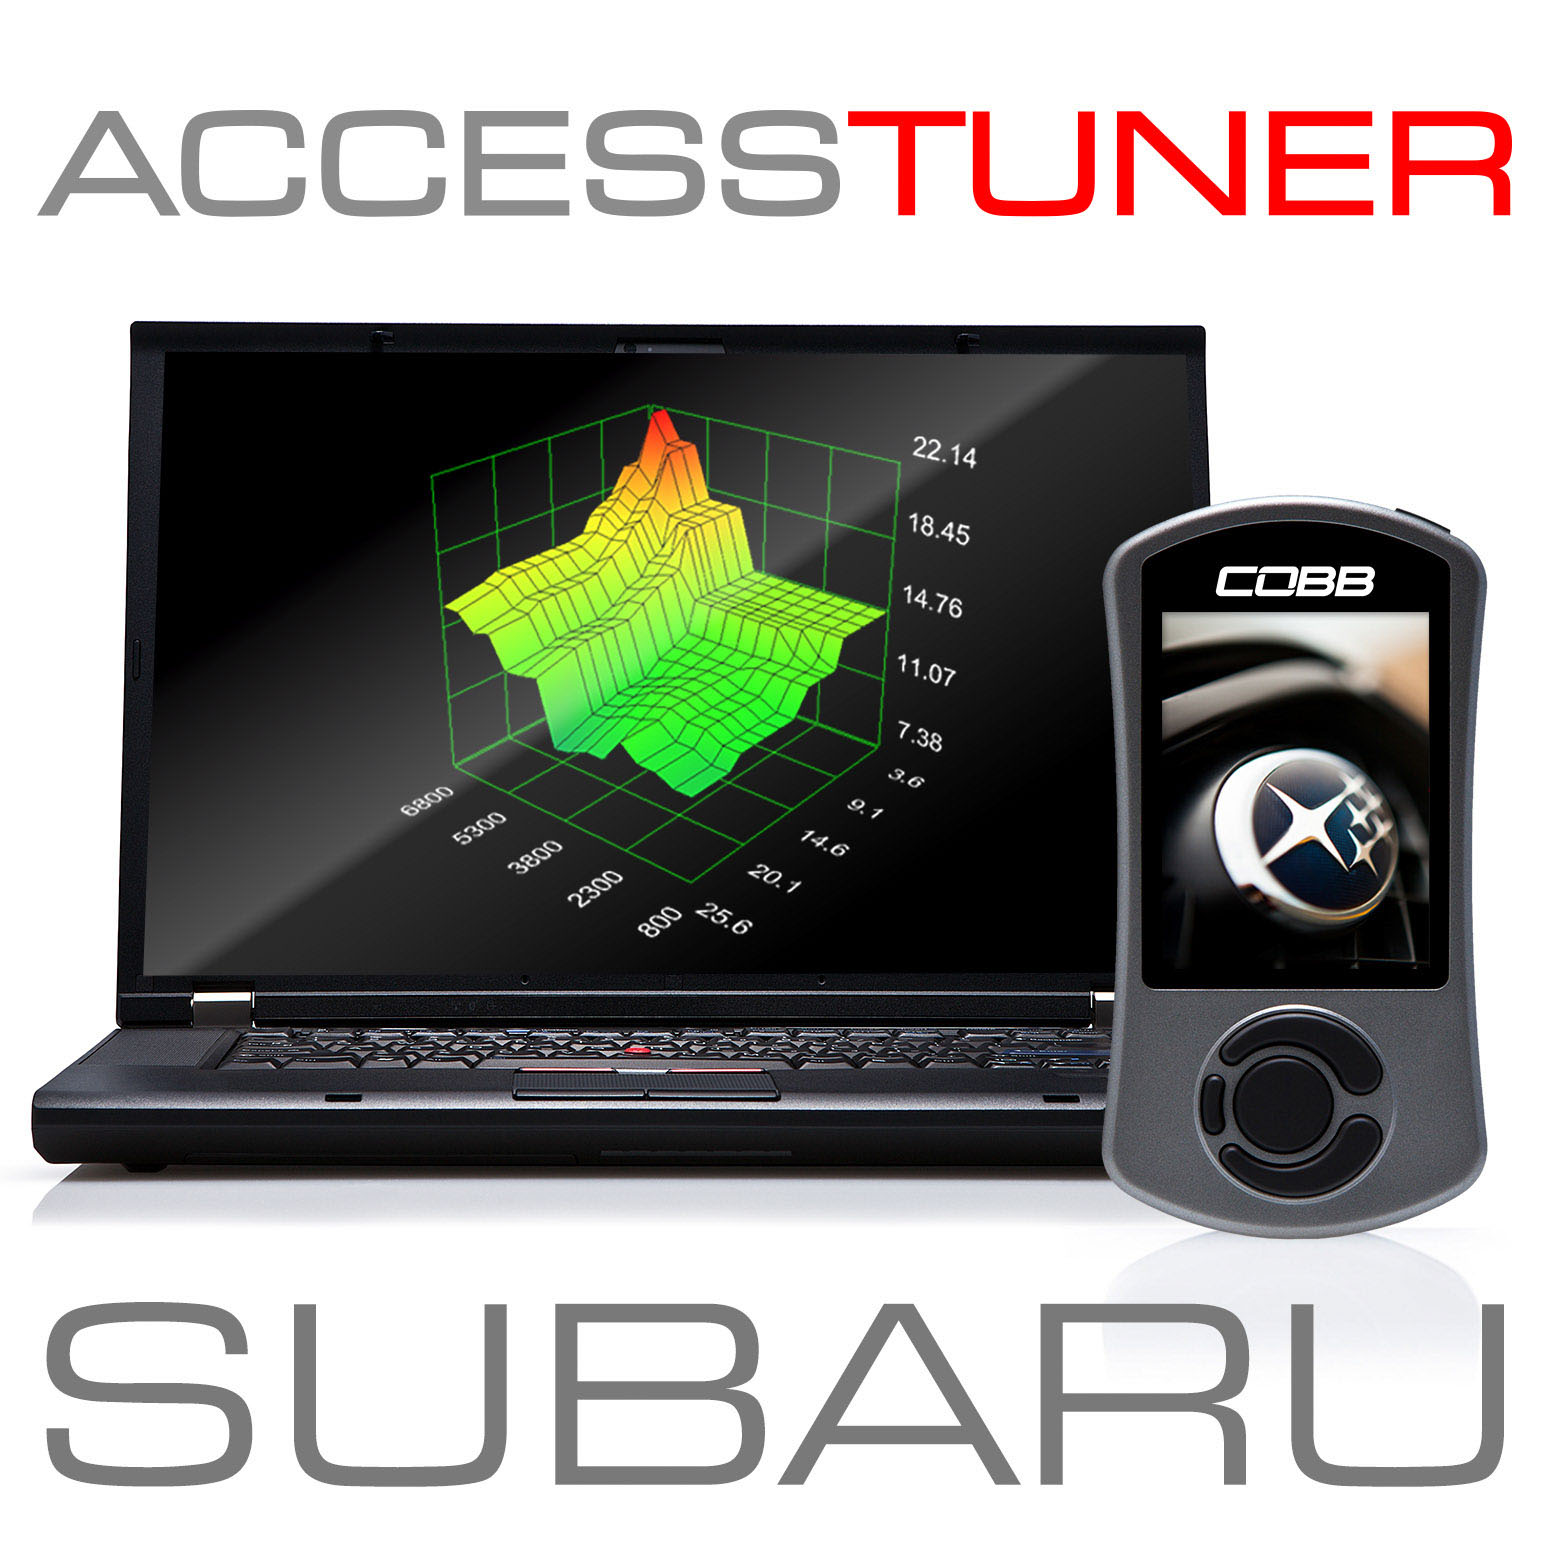 Subaru Accesstuner